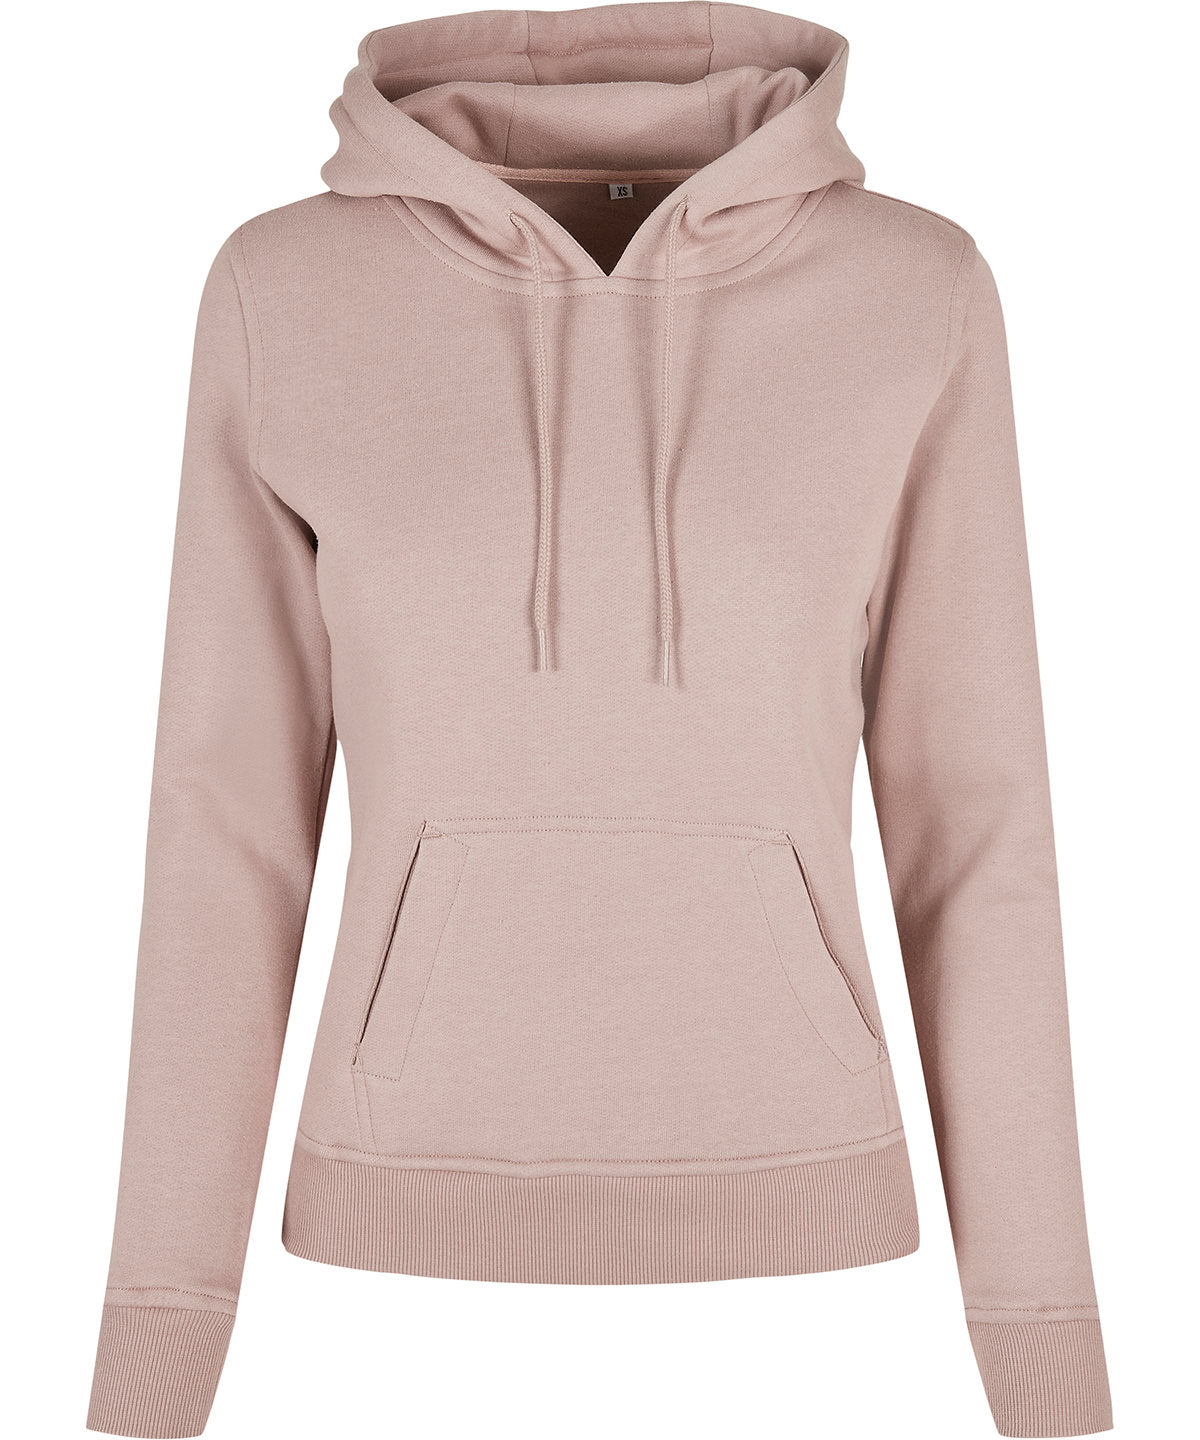 Women's organic hoodie